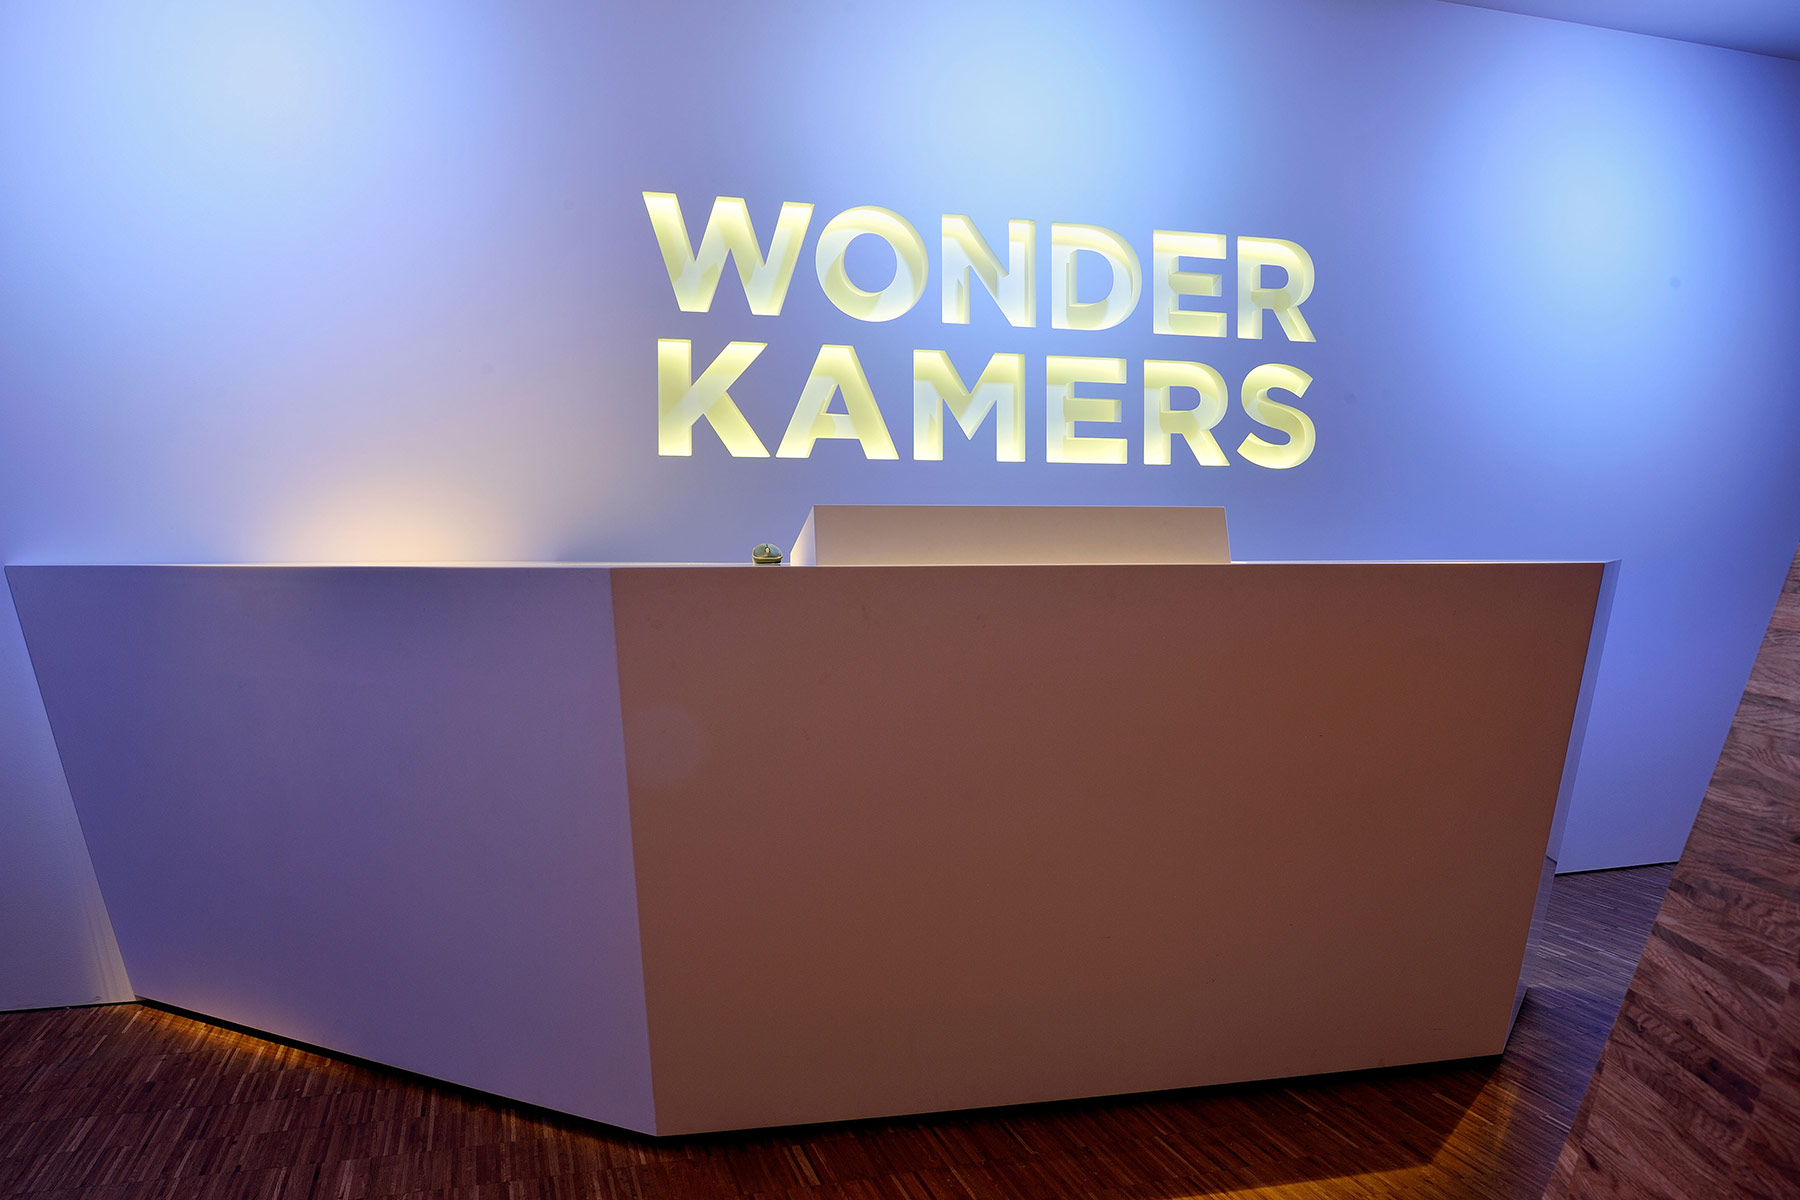 Wonderkamers 2.0 entree - Gemeente Museum Den Haag